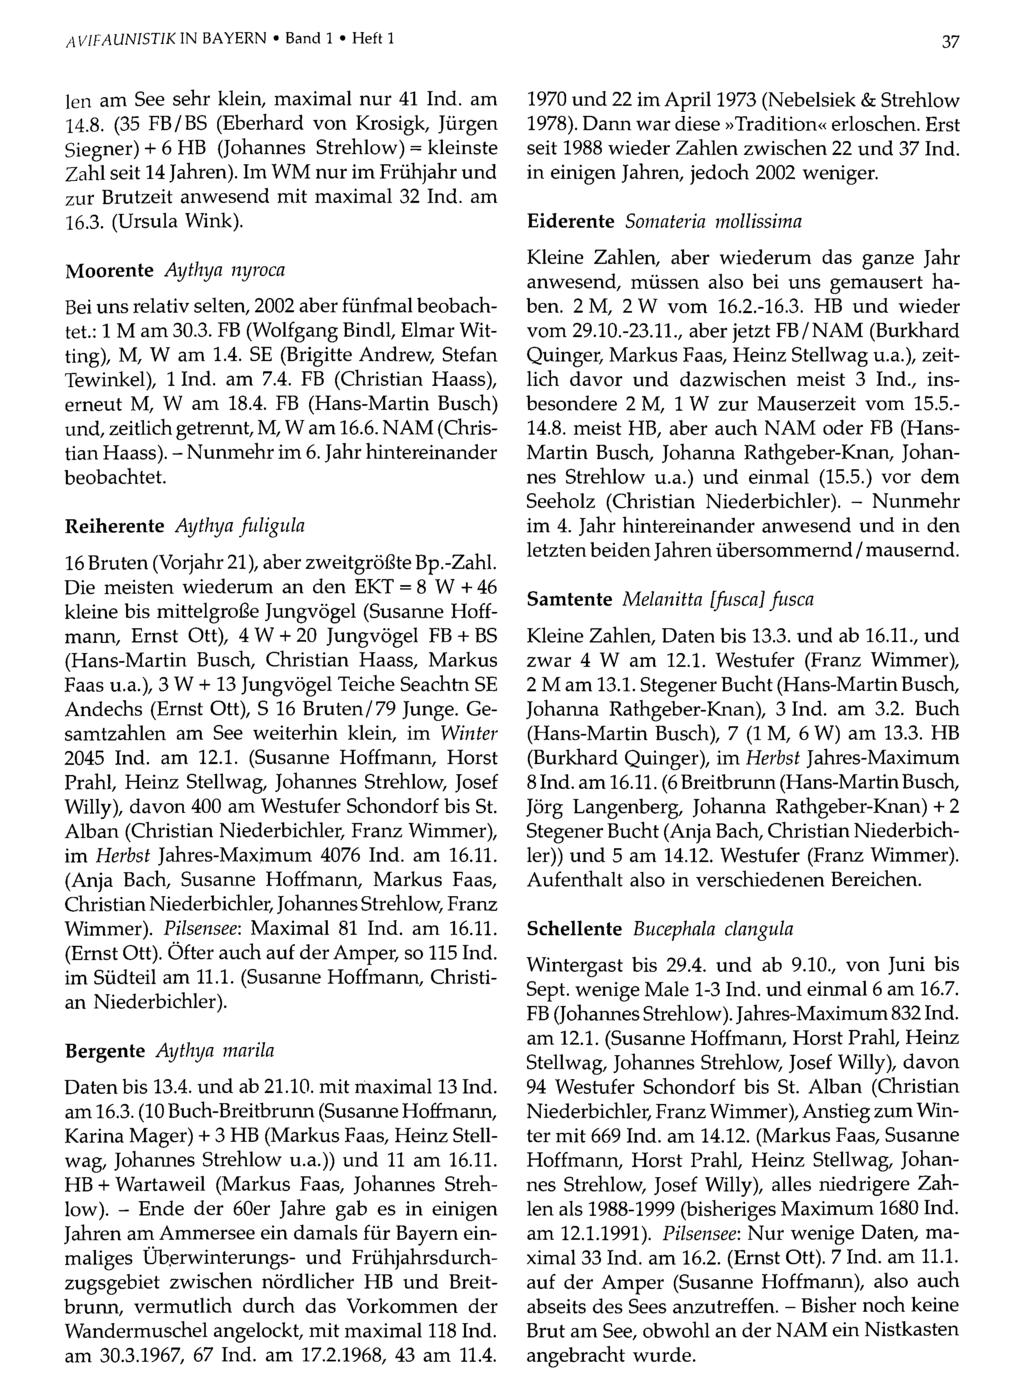 AVIFAUNISTIK IN BAYERN Band Ornithologische 1 Heft 1Gesellschaft Bayern, download unter www.biologiezentrum.at 37 len am See sehr klein, maximal nur 41 Ind. am 14.8.